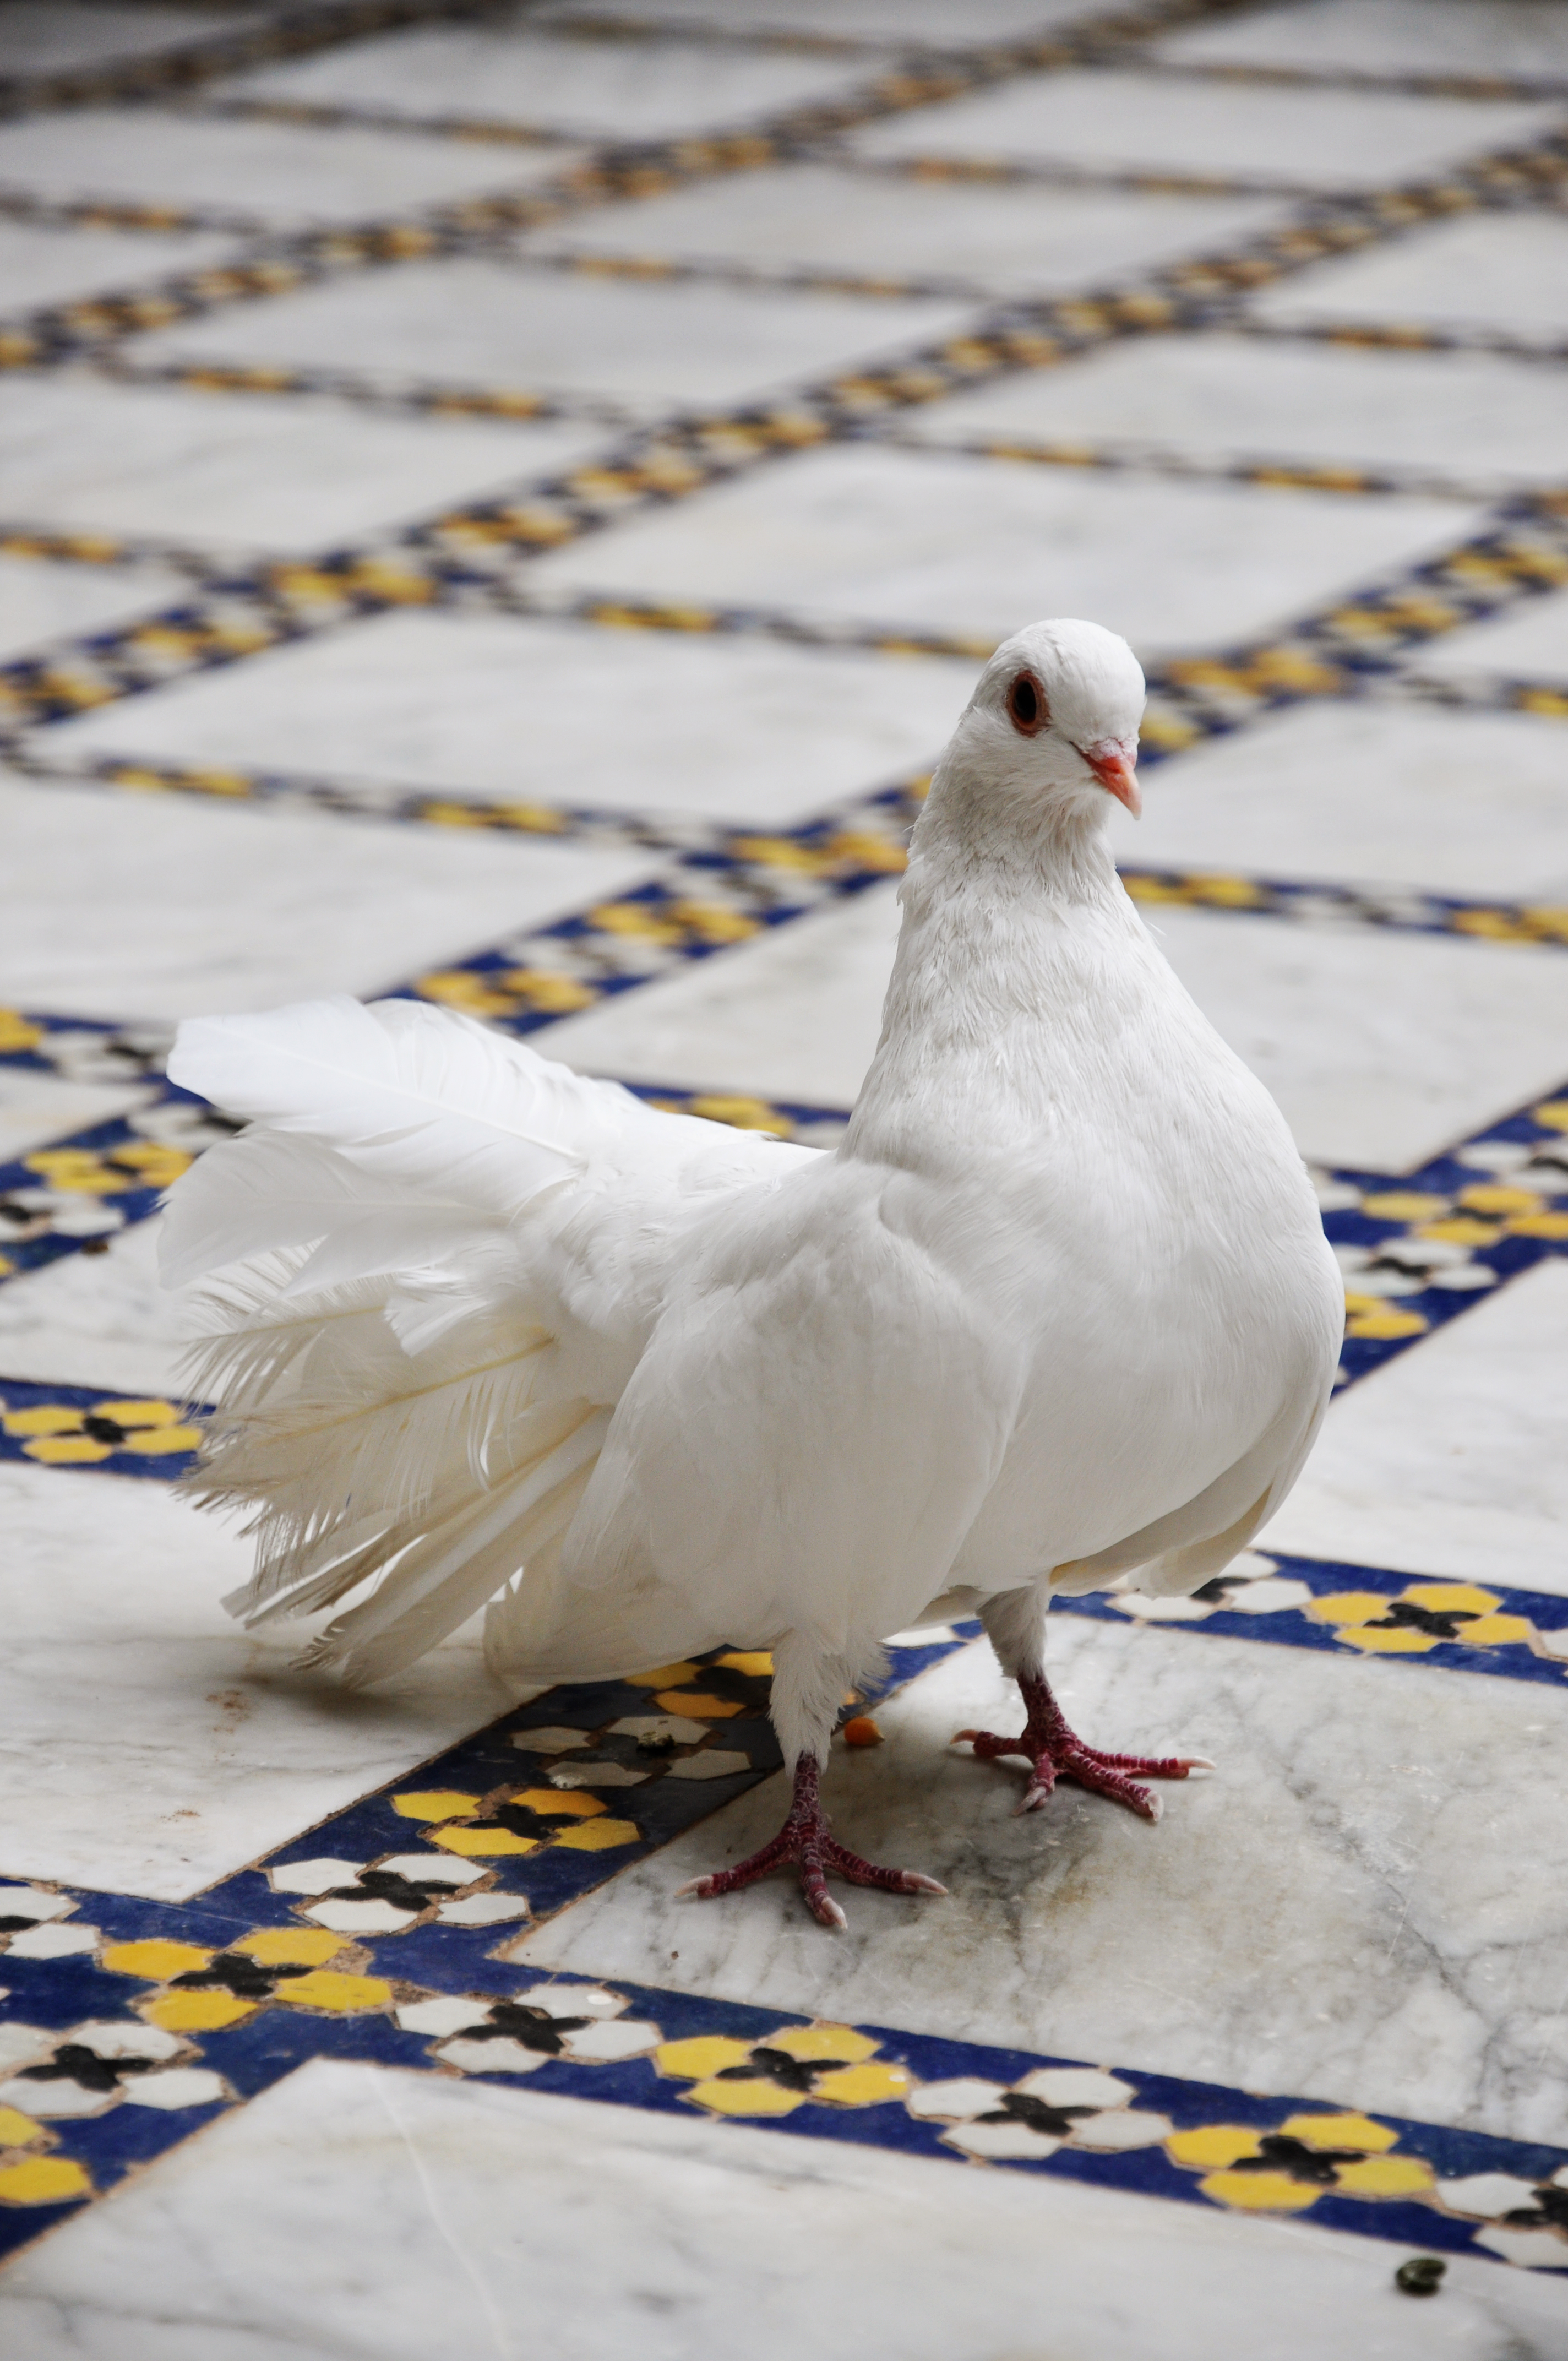 White dove on tiled floor photo